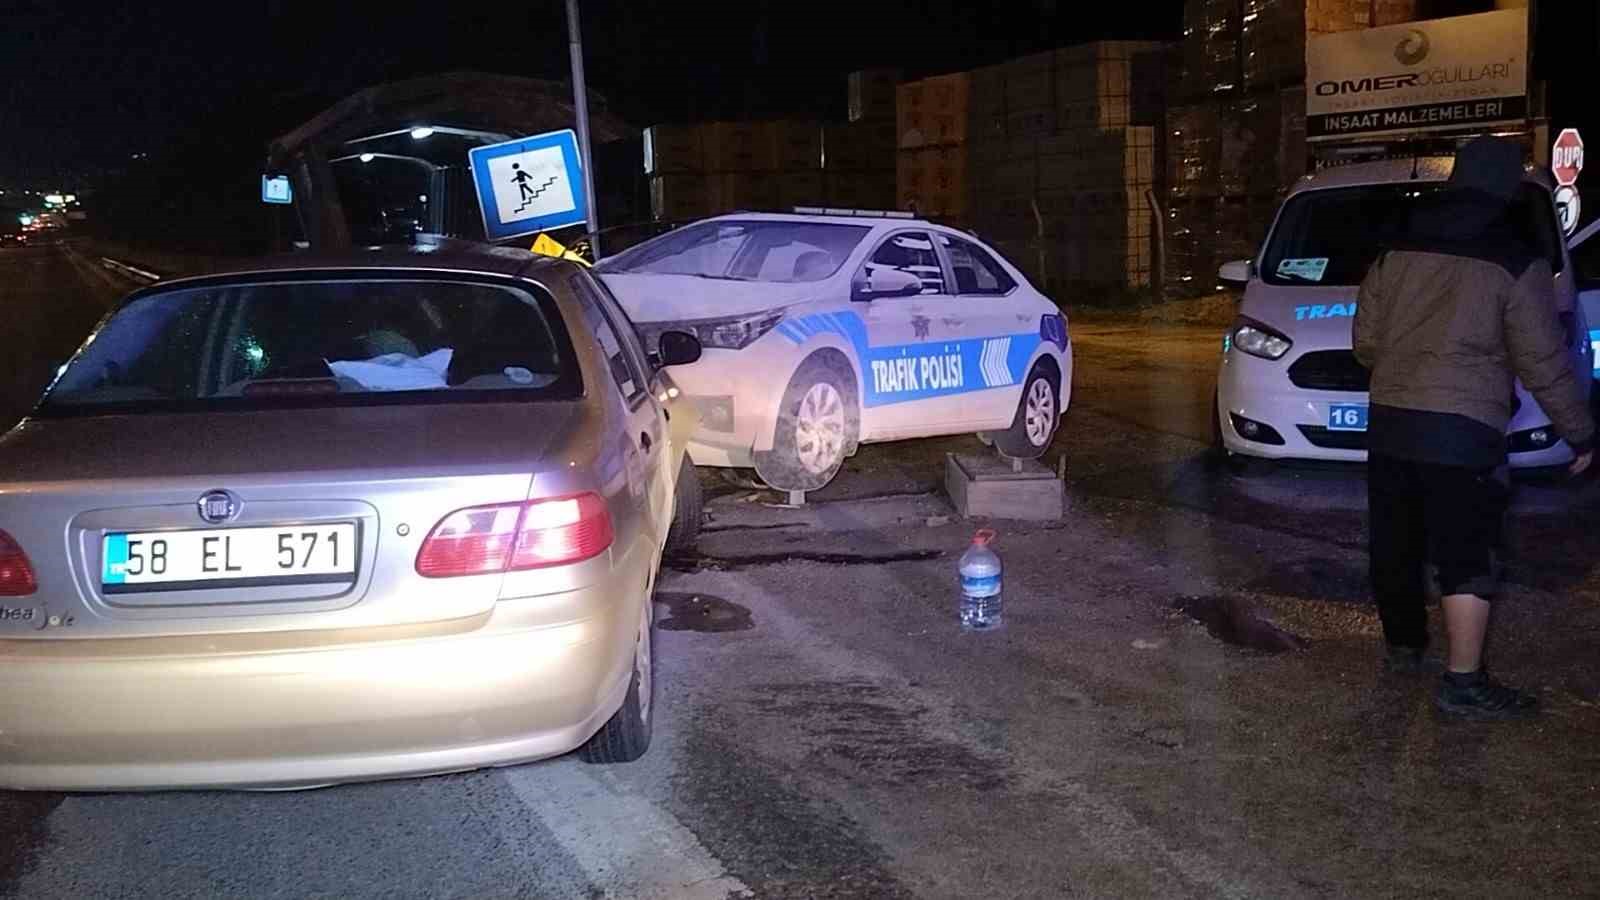 Bursa’da şoke eden kaza, otomobille polis maketine daldı